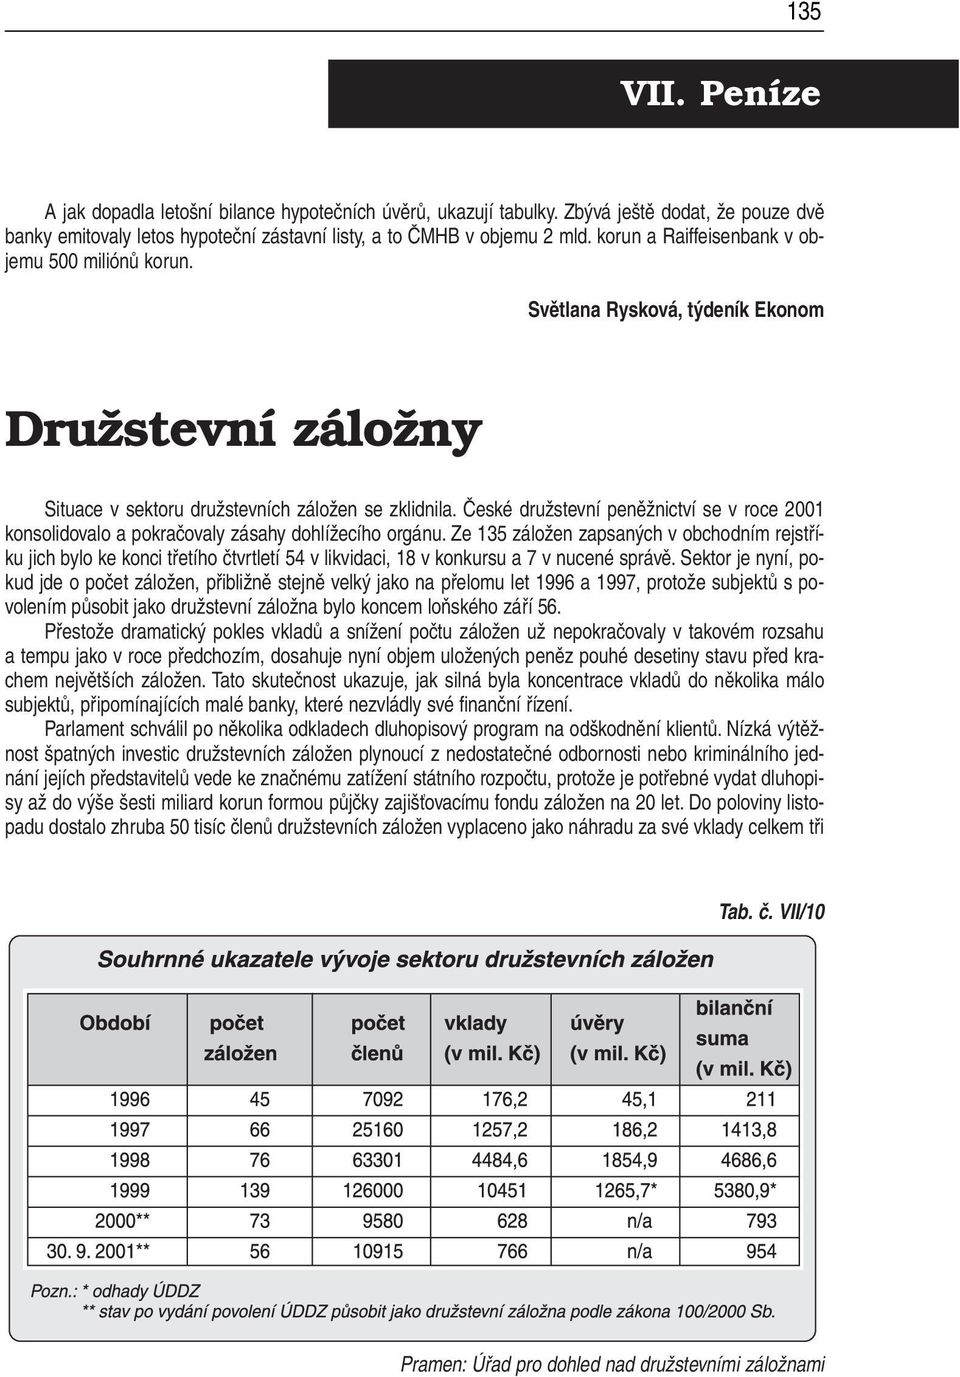 České družstevní peněžnictví se v roce 2001 konsolidovalo a pokračovaly zásahy dohlížecího orgánu.